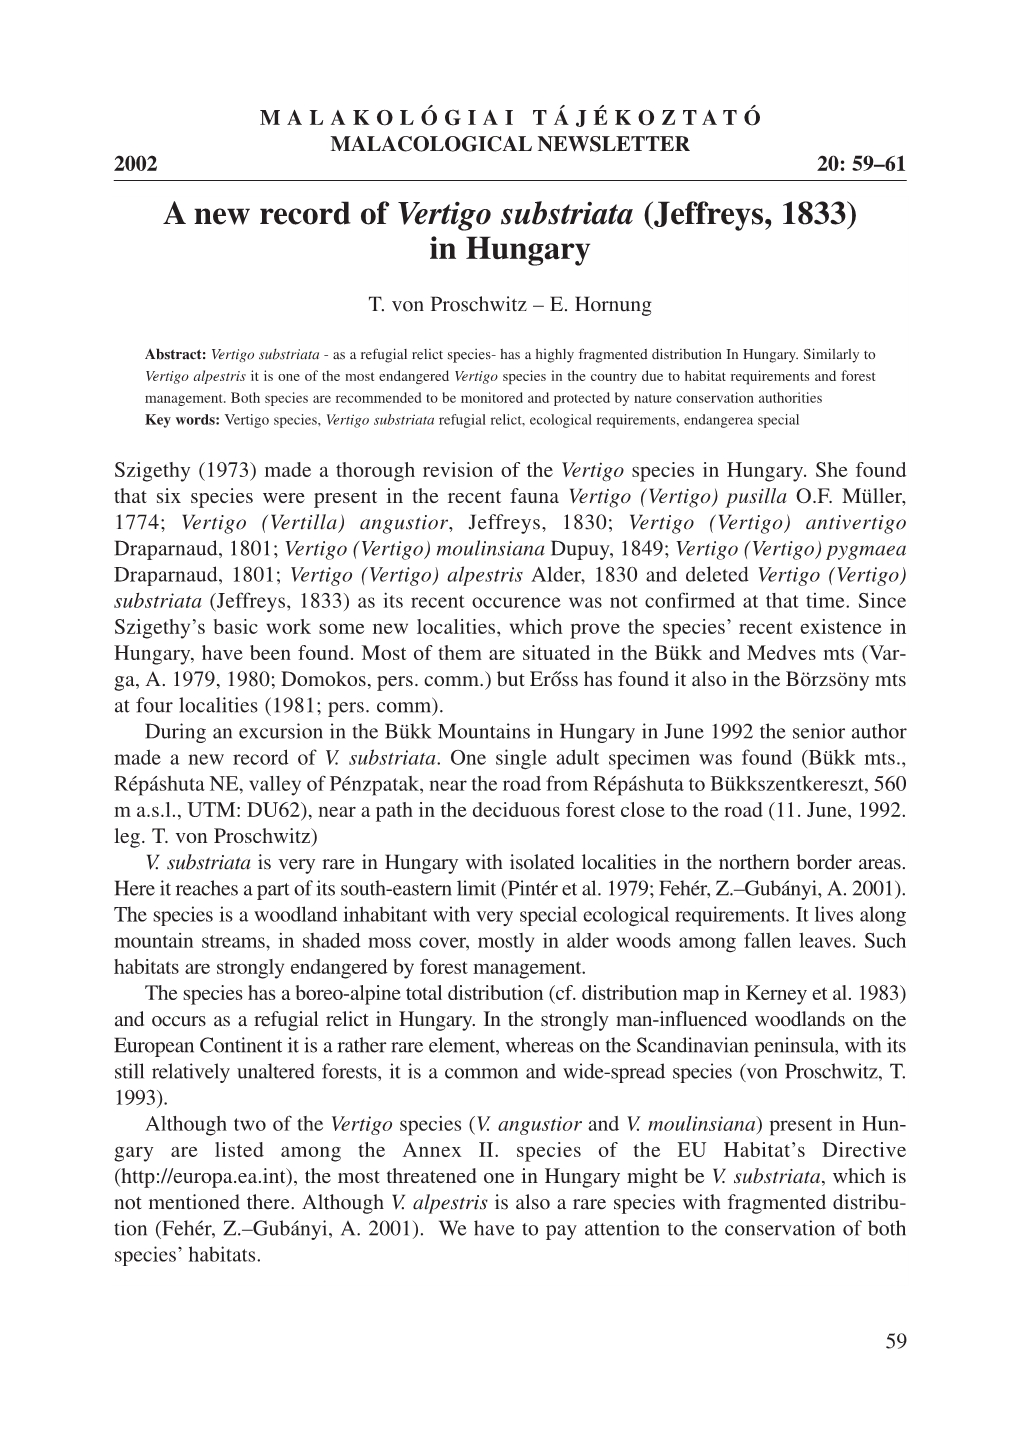 A New Record of Vertigo Substriata (Jeffreys, 1833) in Hungary